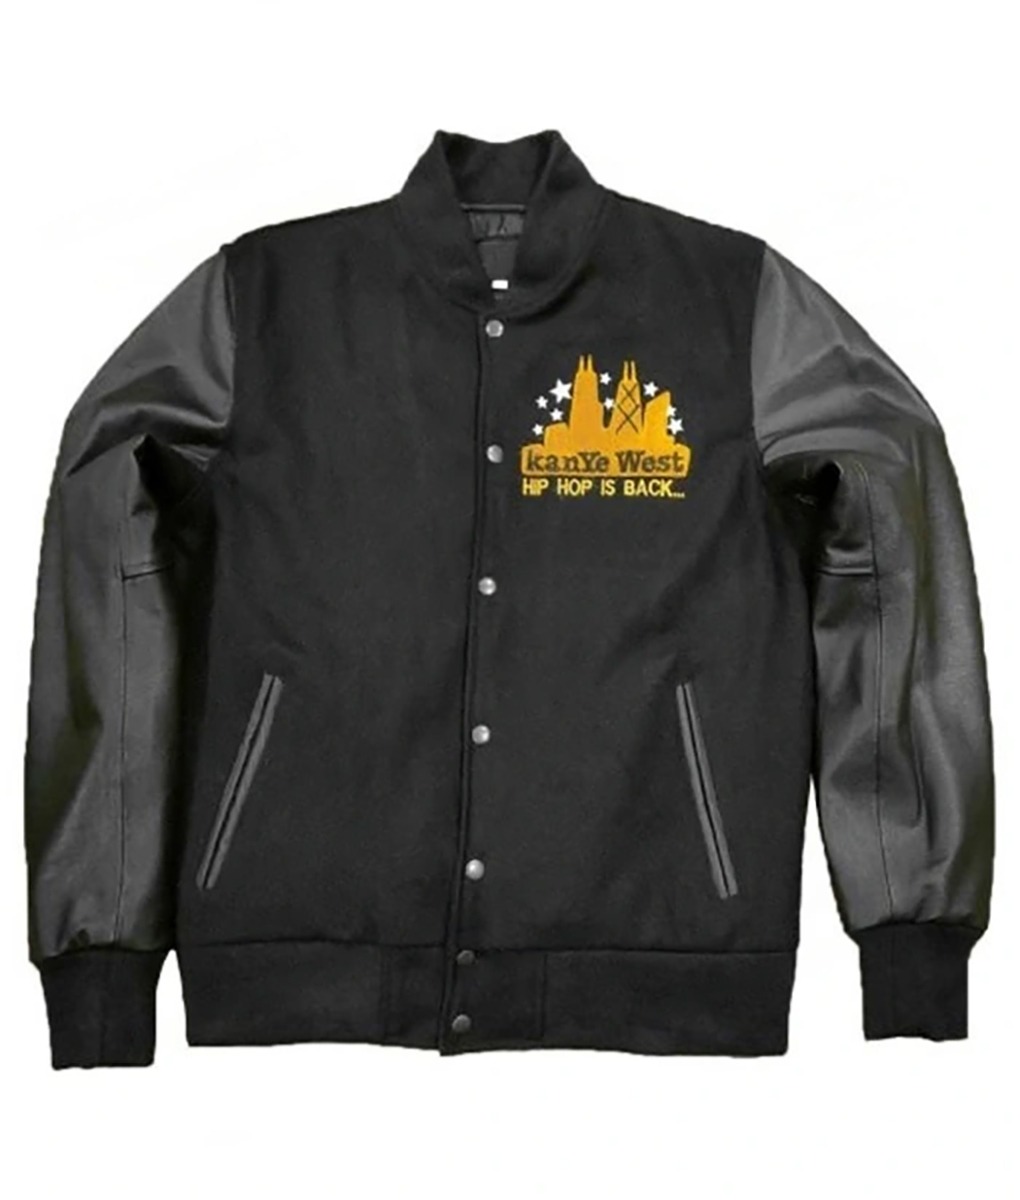 Kanye West College Dropout Black Jacket (1)